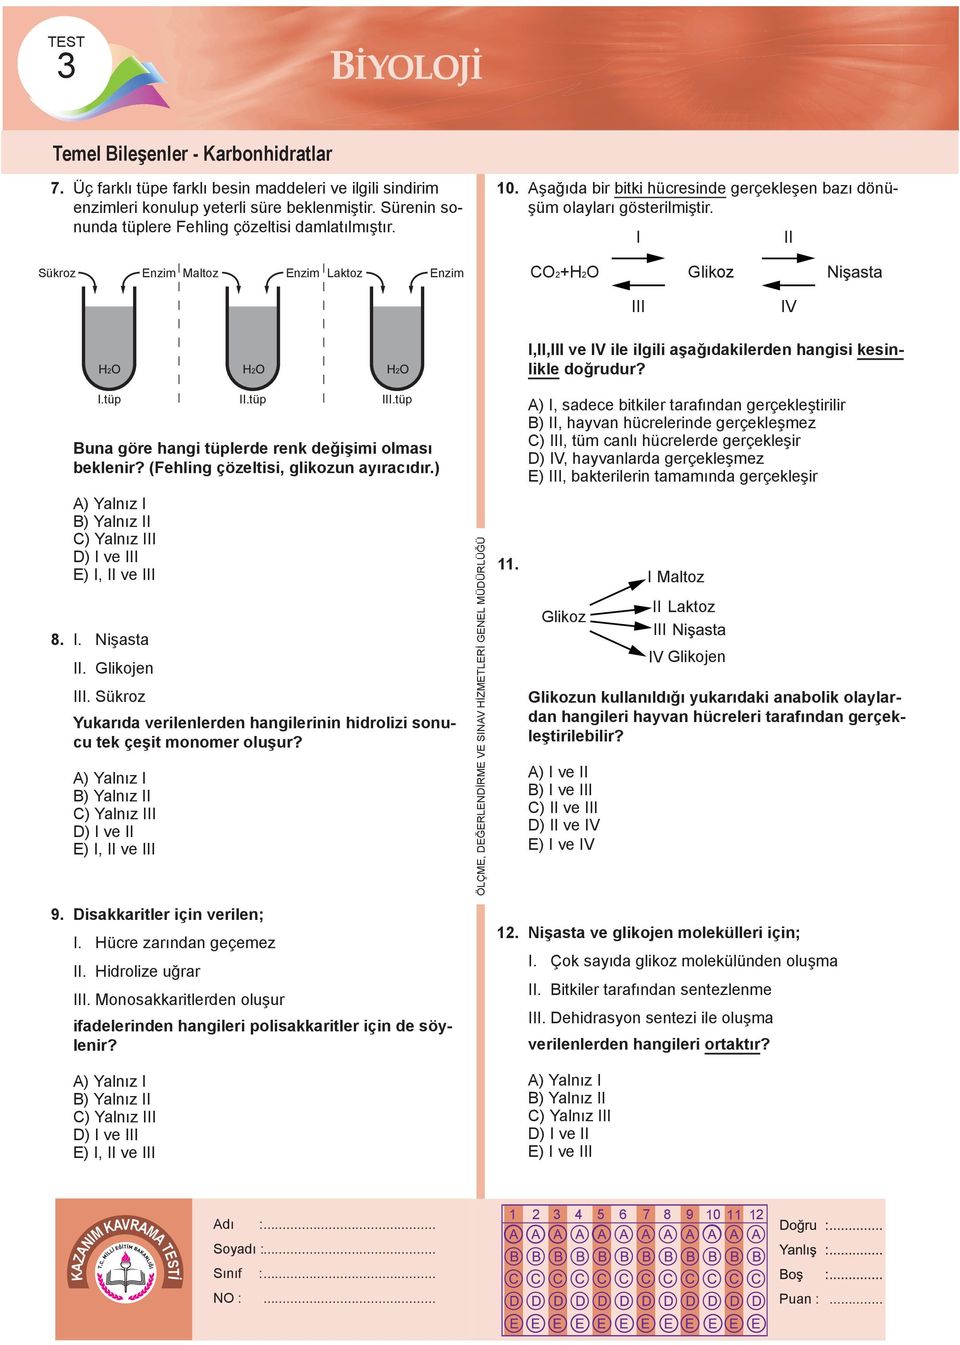 I II Sükroz Enzim Maltoz Enzim Laktoz Enzim CO2+H2O Glikoz III IV I,II,III ve IV ile ilgili aşağıdakilerden hangisi kesinlikle doğrudur? I.tüp Buna göre hangi tüplerde renk değişimi olması beklenir?